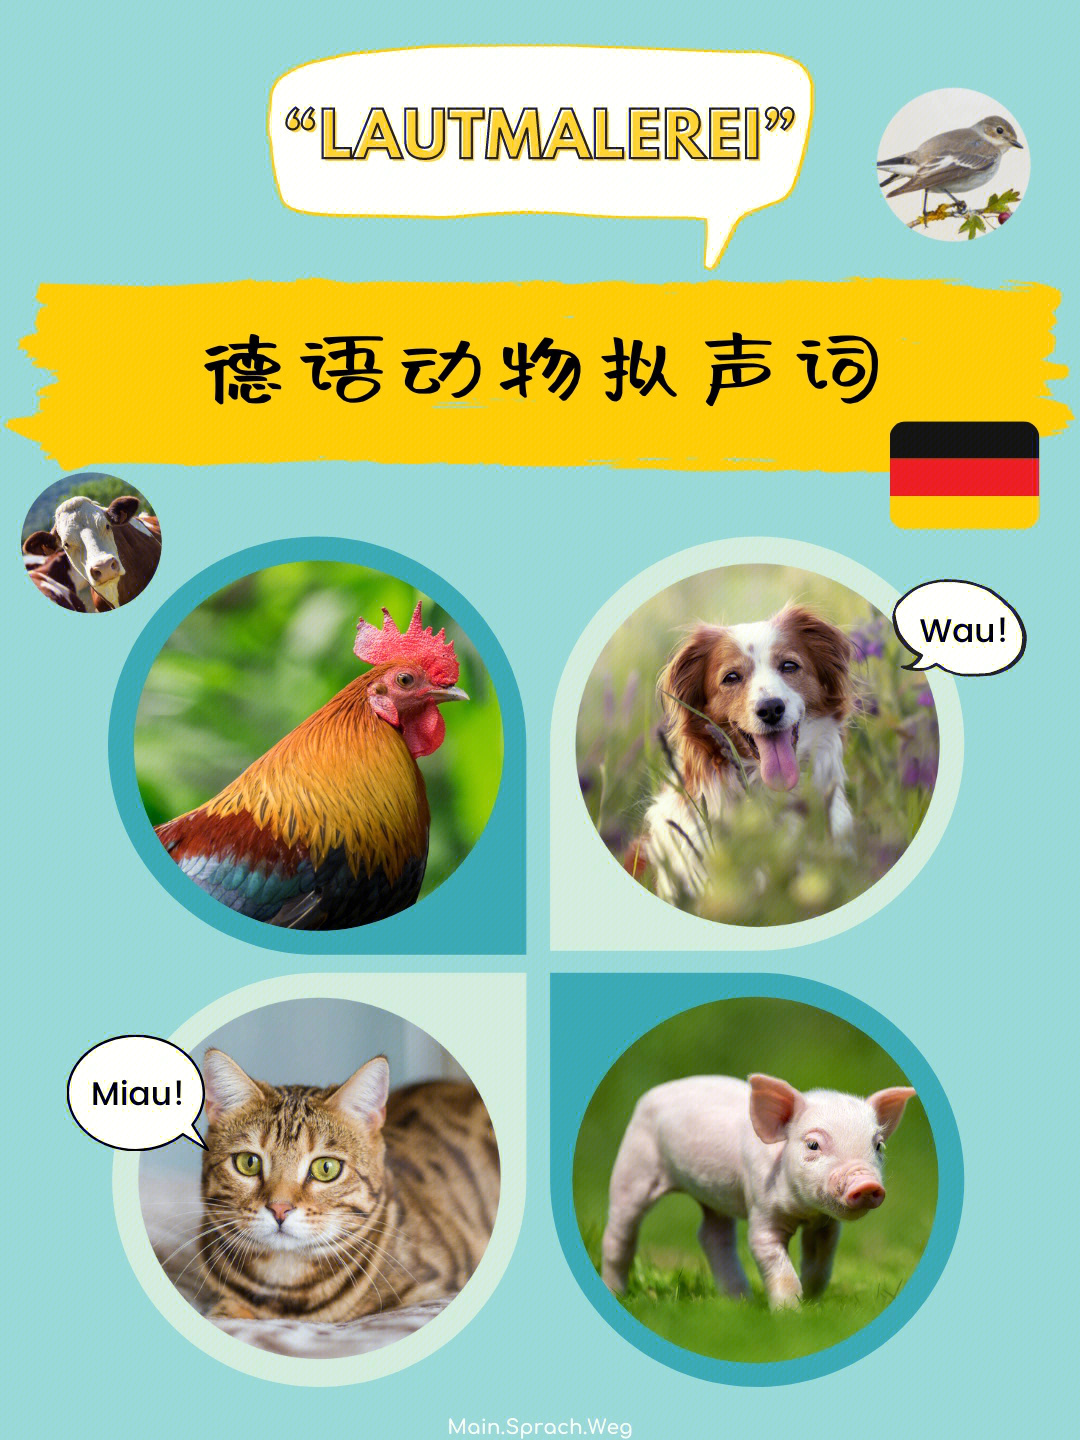 德语里动物的拟声词有些和中文里的相似,比如猫,狗,牛,羊的叫声